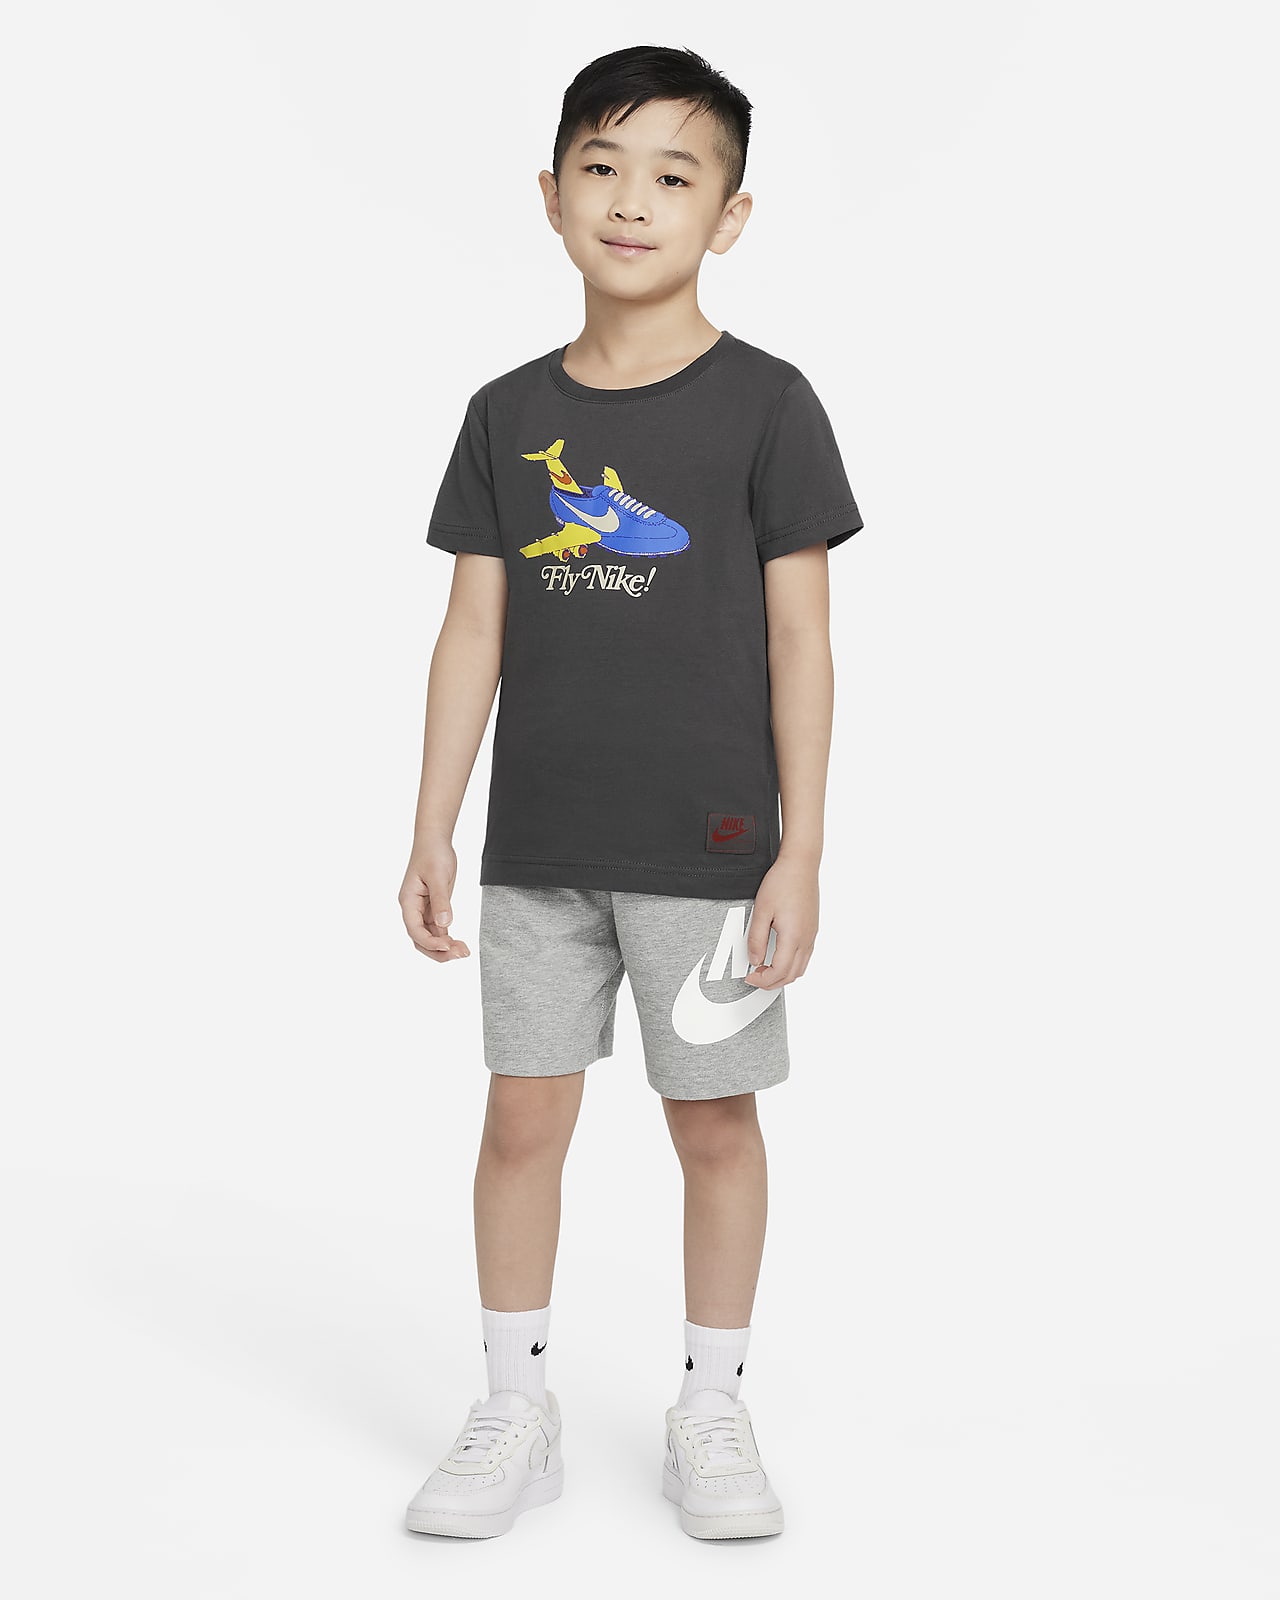 Regeren Eindeloos Verrast zijn Nike Little Kids' T-Shirt. Nike.com